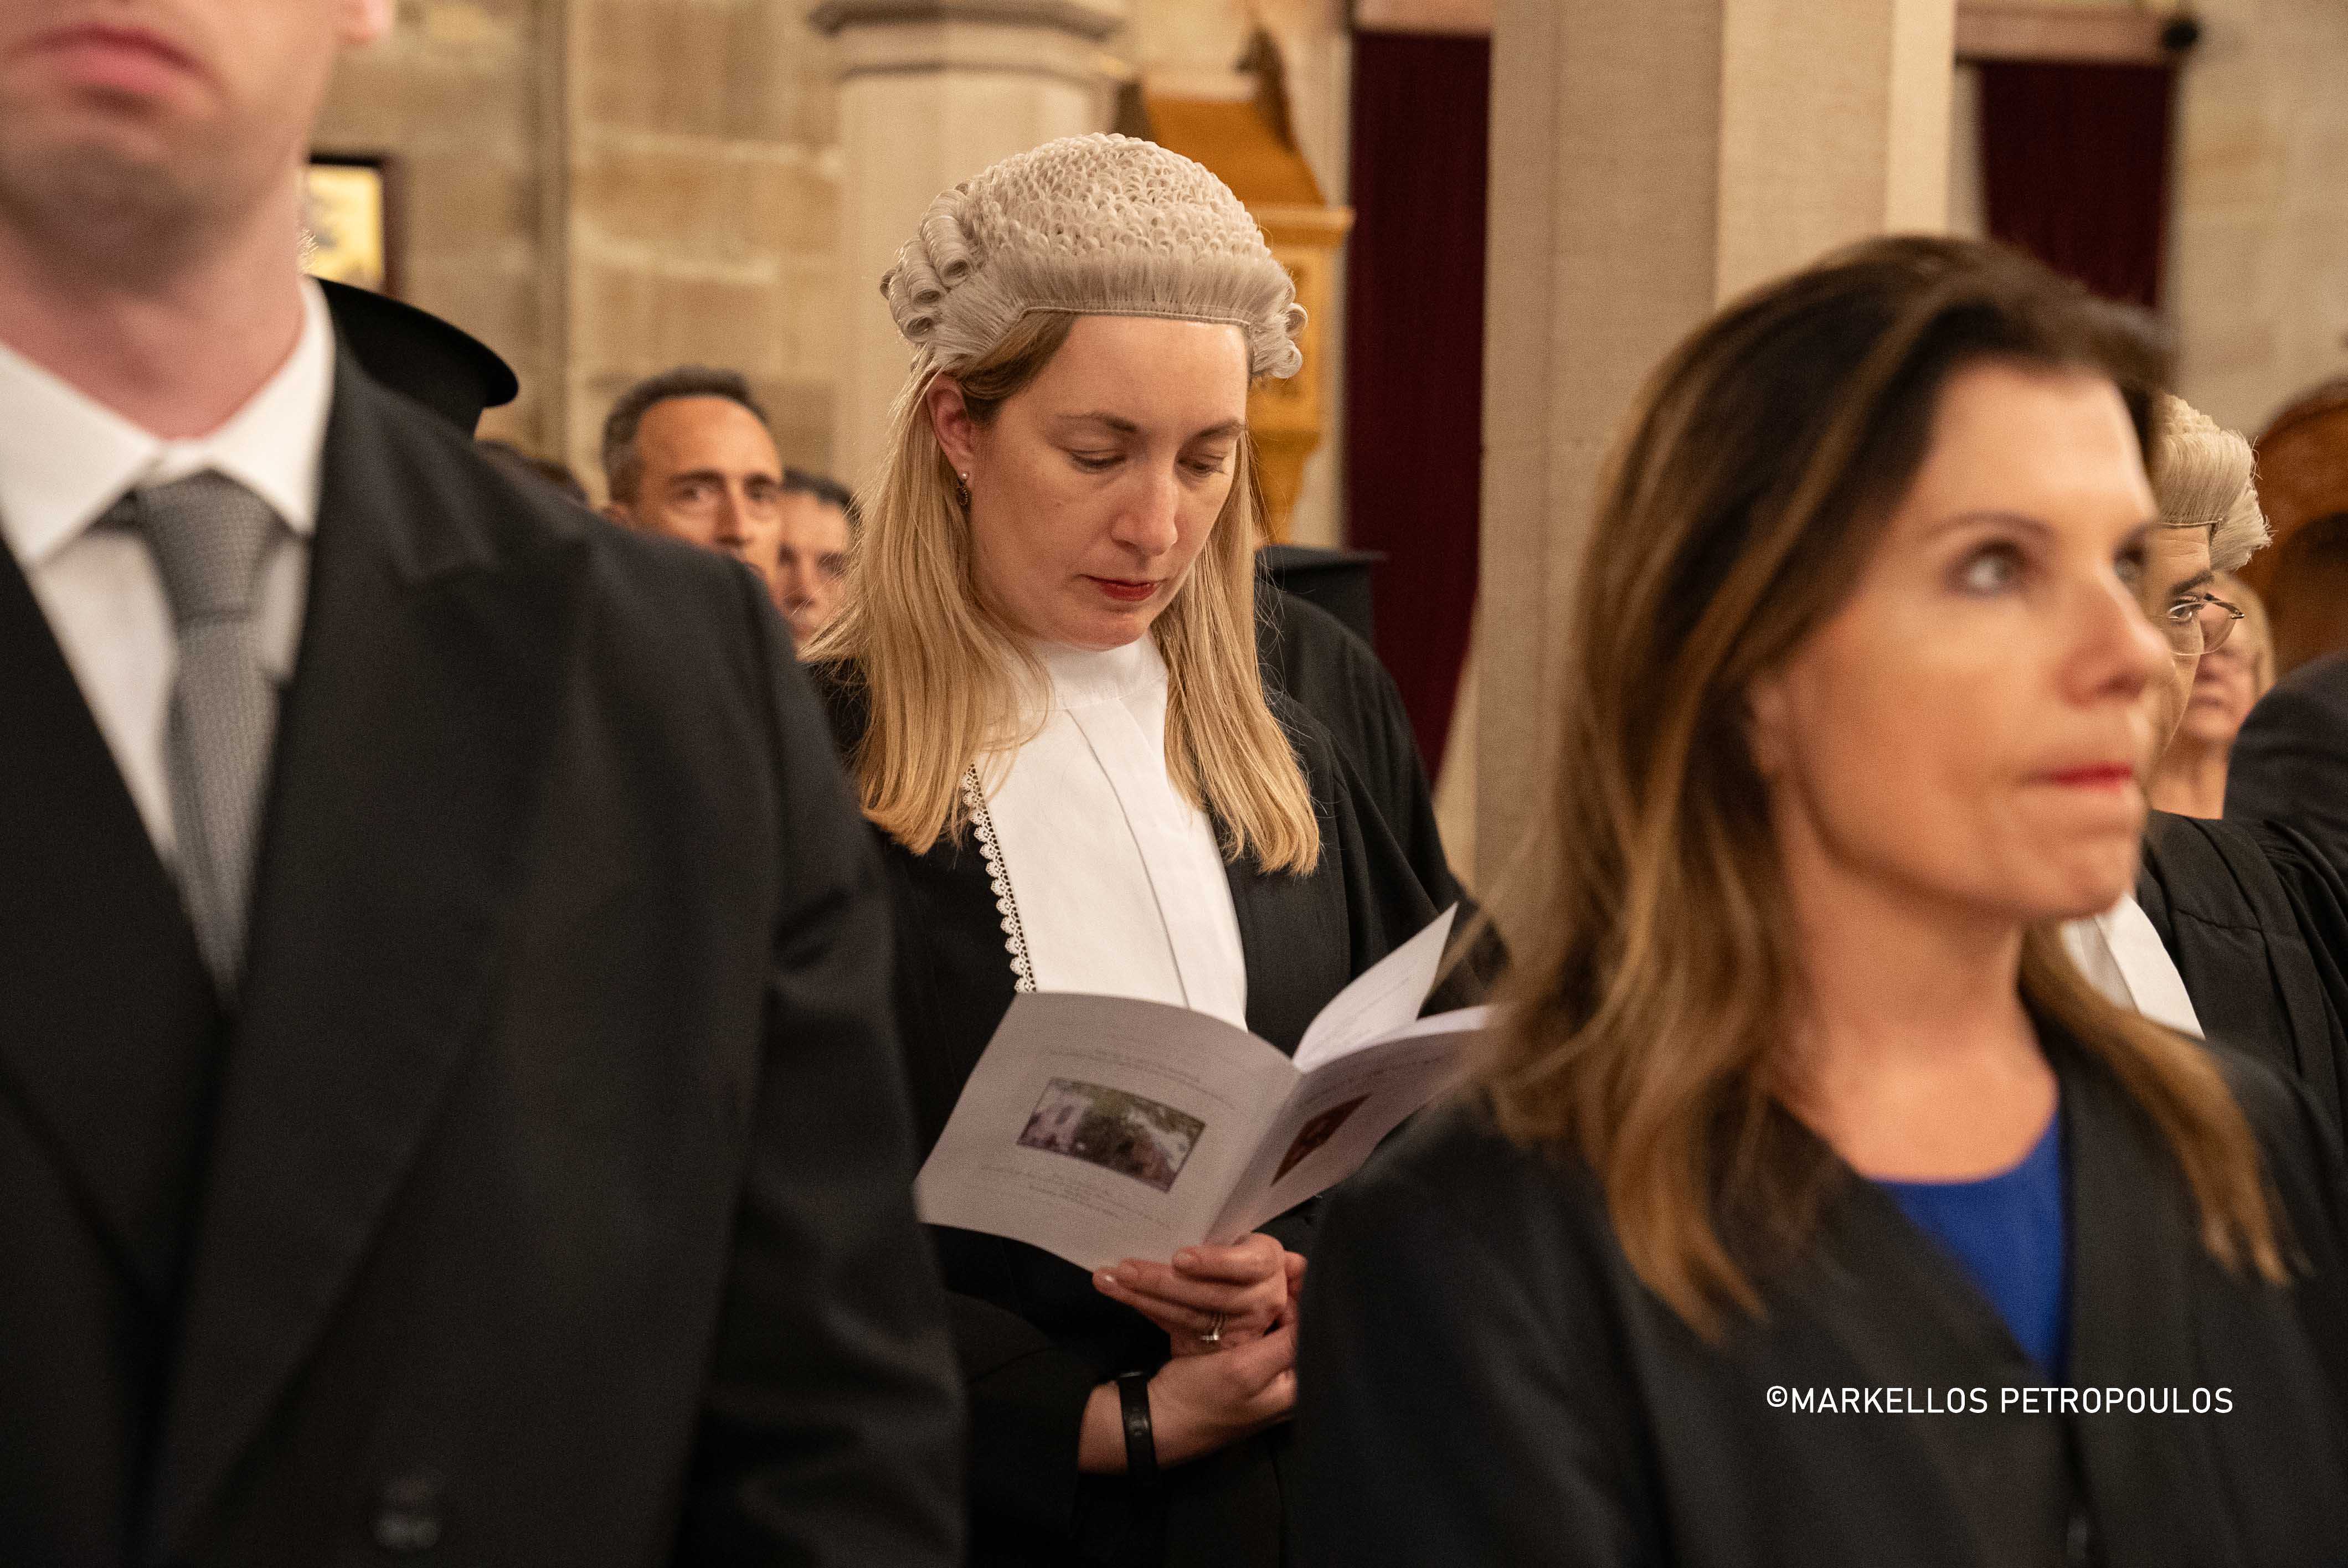 Με την ευλογία της Ορθοδόξου Εκκλησίας η έναρξη του νέου Δικαστικού Έτους στη Νέα Νότια Ουαλία